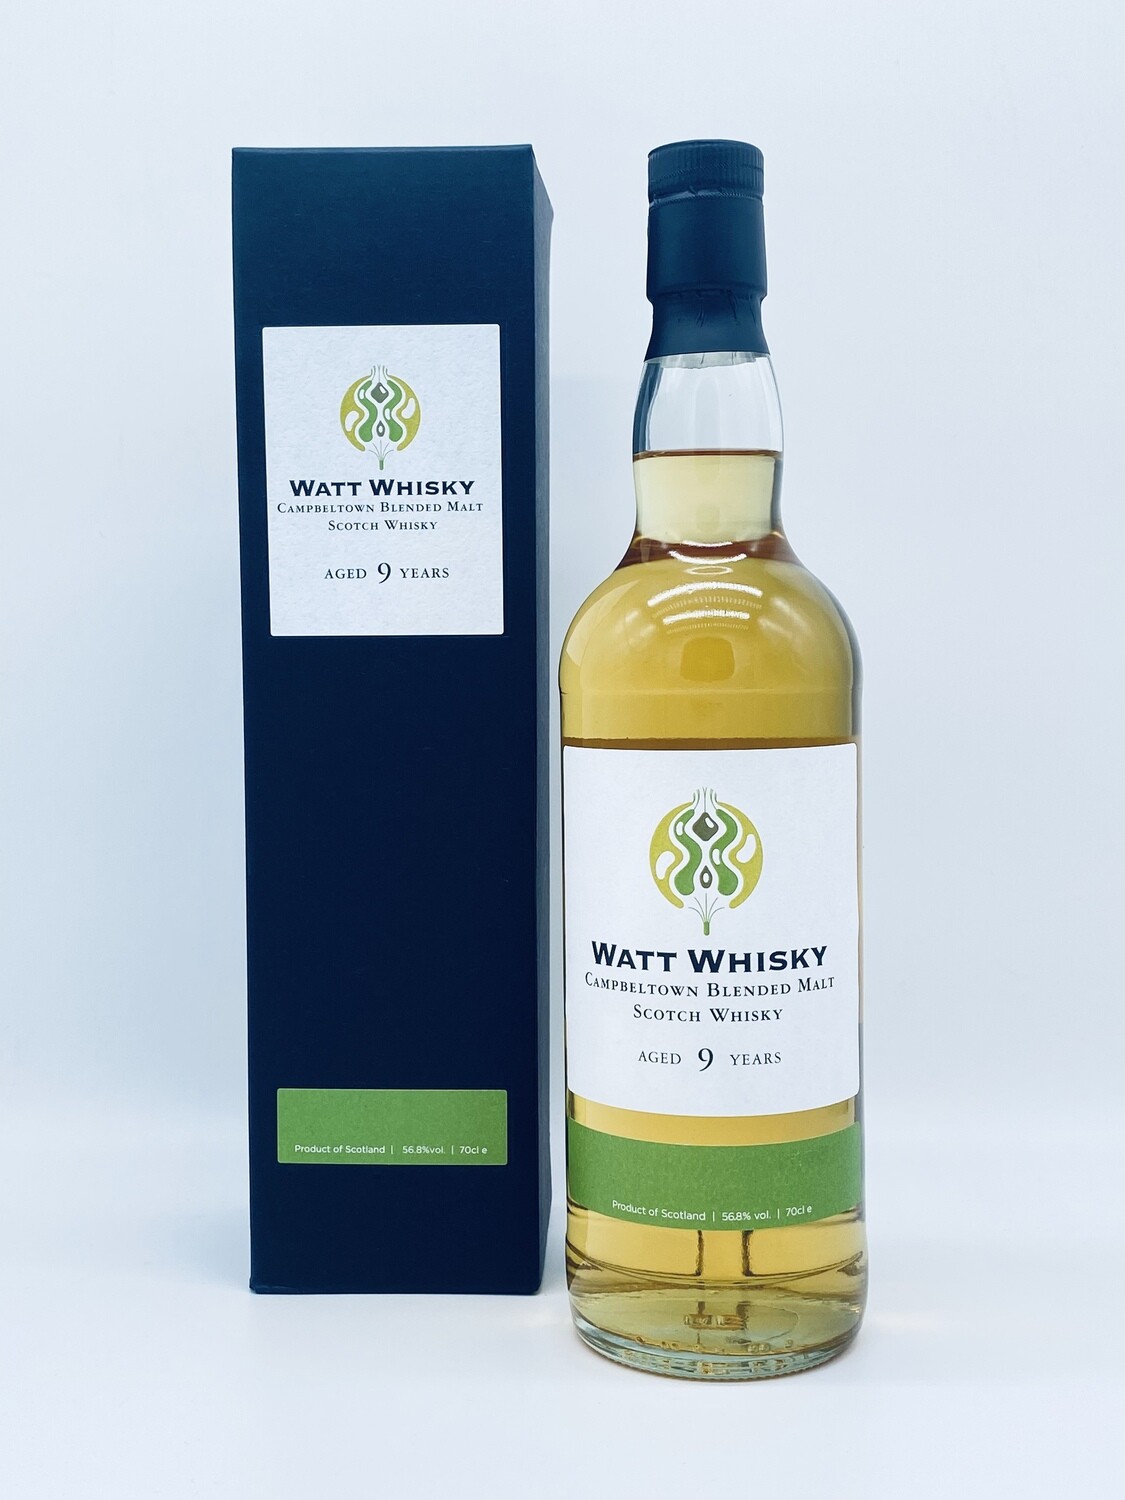 Watt whisky Campbeltown blende malt 9 years